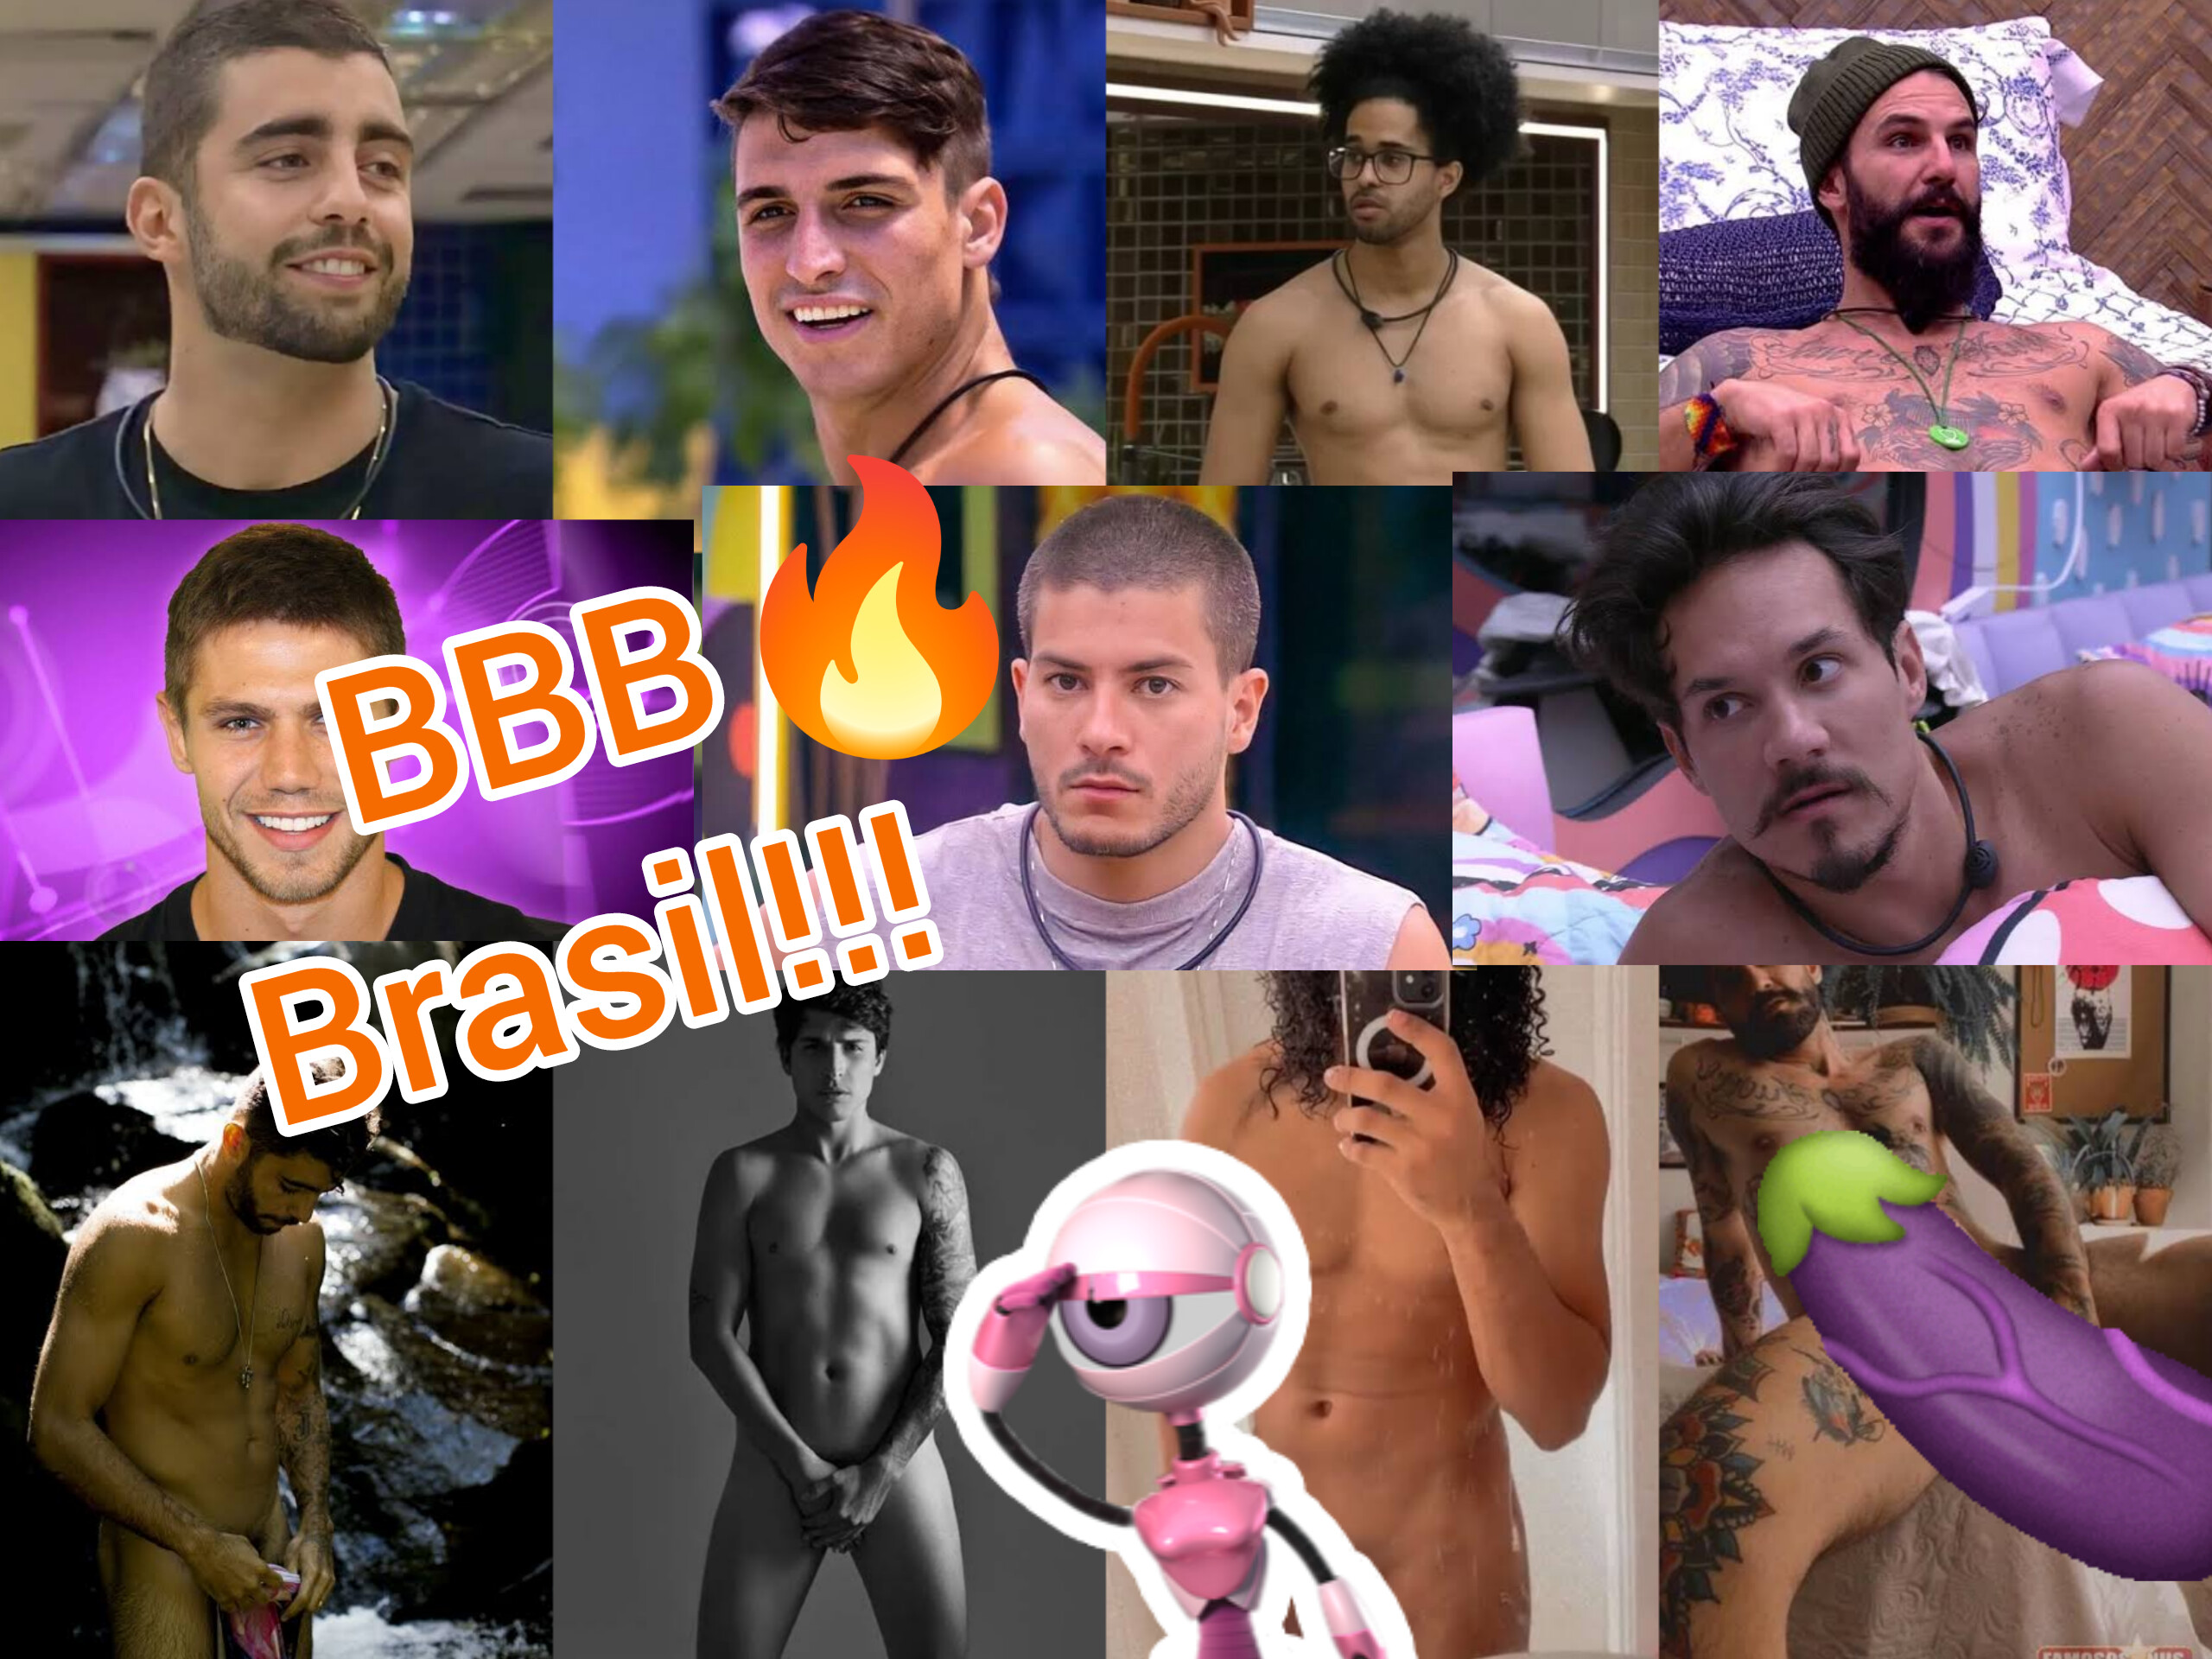 O BBB23 vem aí! é já estamos ansiosos por mais nudes, relembre as nudes dos brothers que já caíram nas redes!